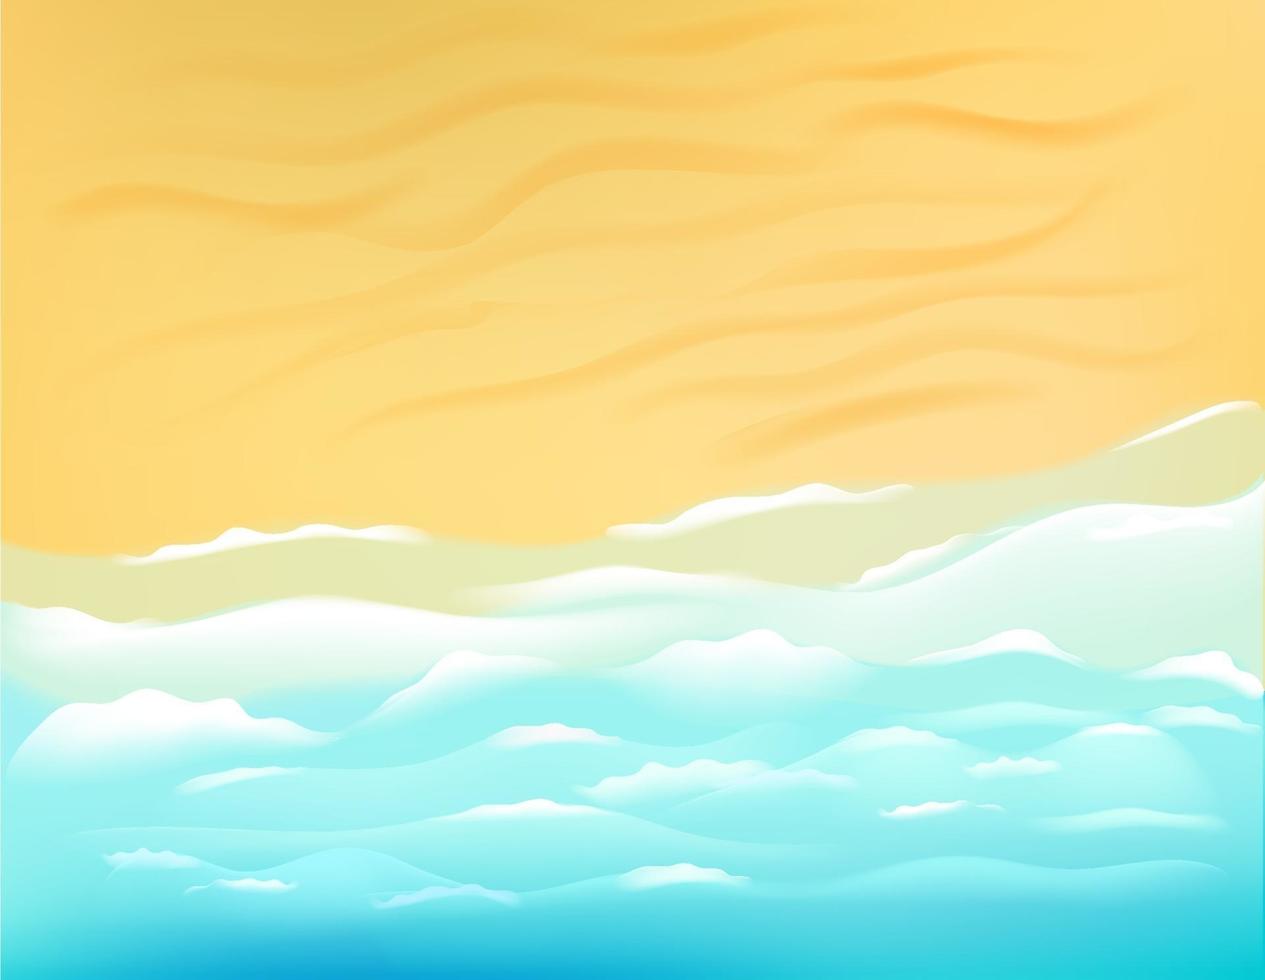 Sunny beach with ocean waves. Vector illustration